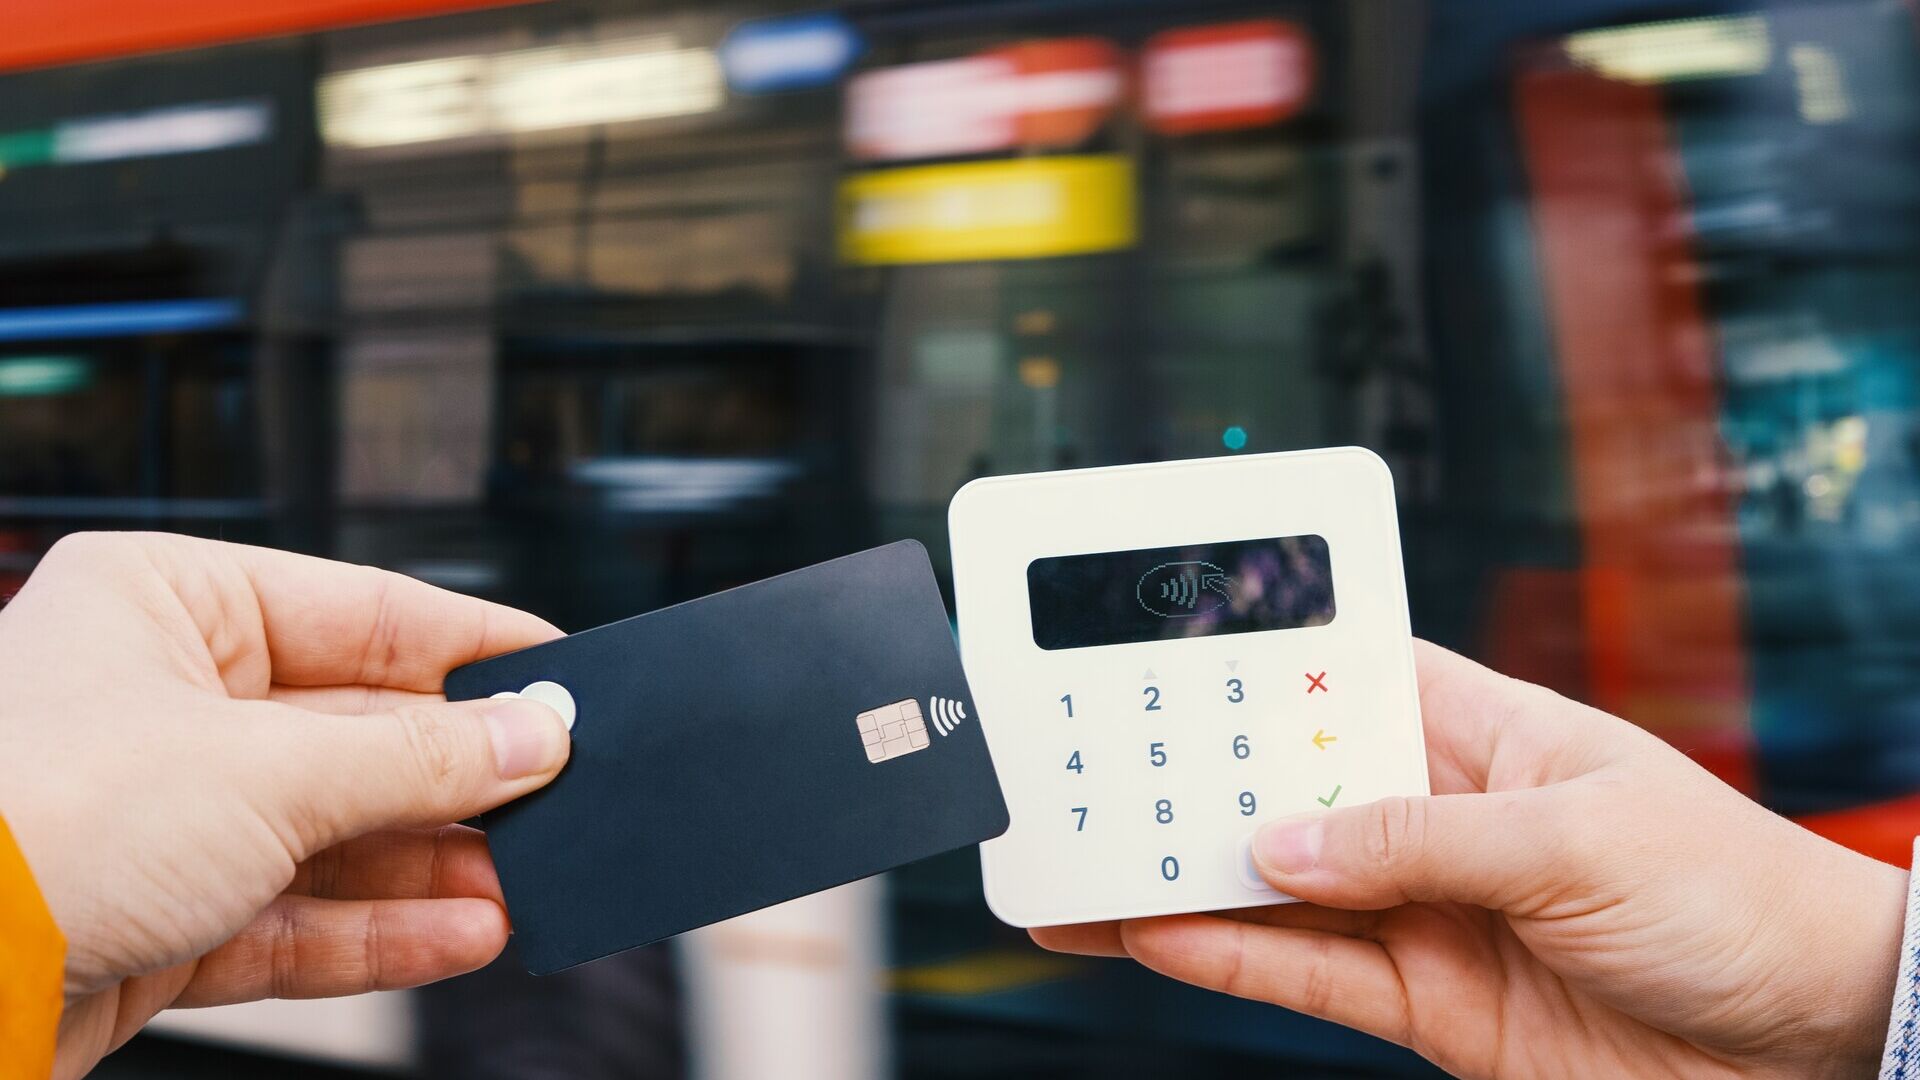 मोबाइल भुगतान: छोटे व्यवसाय अक्सर बड़ी रकम के लिए कार्ड या डिजिटल भुगतान की अनुमति देते हैं क्योंकि अन्यथा उनकी लेनदेन लागत अधिक होती